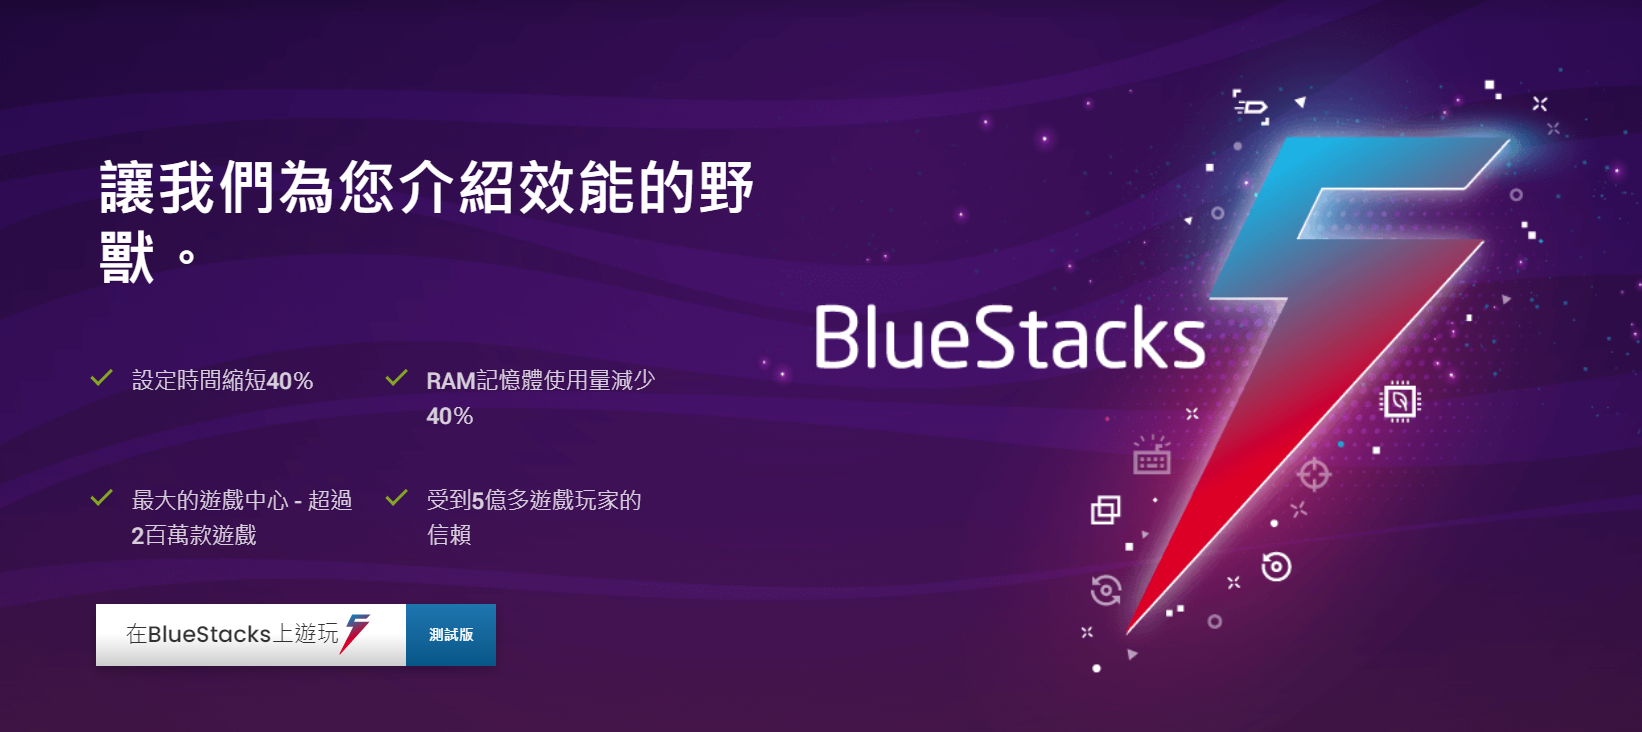 BlueStacks 5效能大幅提升，改善記憶體使用率，帶給玩家更好的電腦玩手遊體驗！ - Android, 電腦玩手遊, 安卓模擬器, BlueStacks模擬器, 手遊電腦玩, BlueStacks5 - 敗家達人推薦